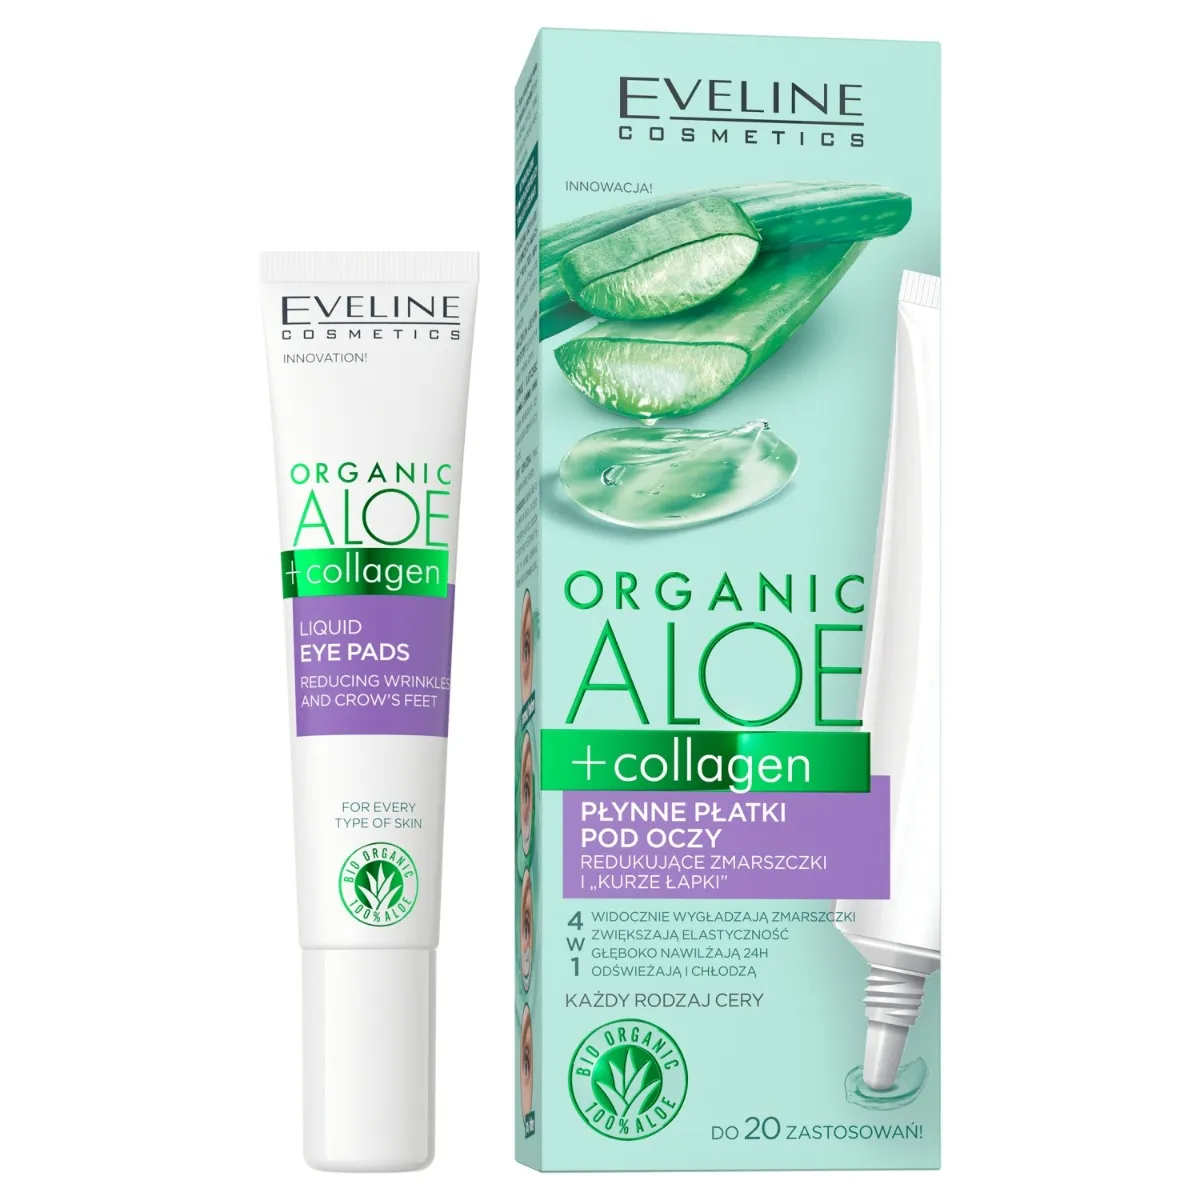 Eveline Cosmetics Organic Aloe + Collagen płynne płatki pod oczy przeciwzmarszczkowe, 20 ml